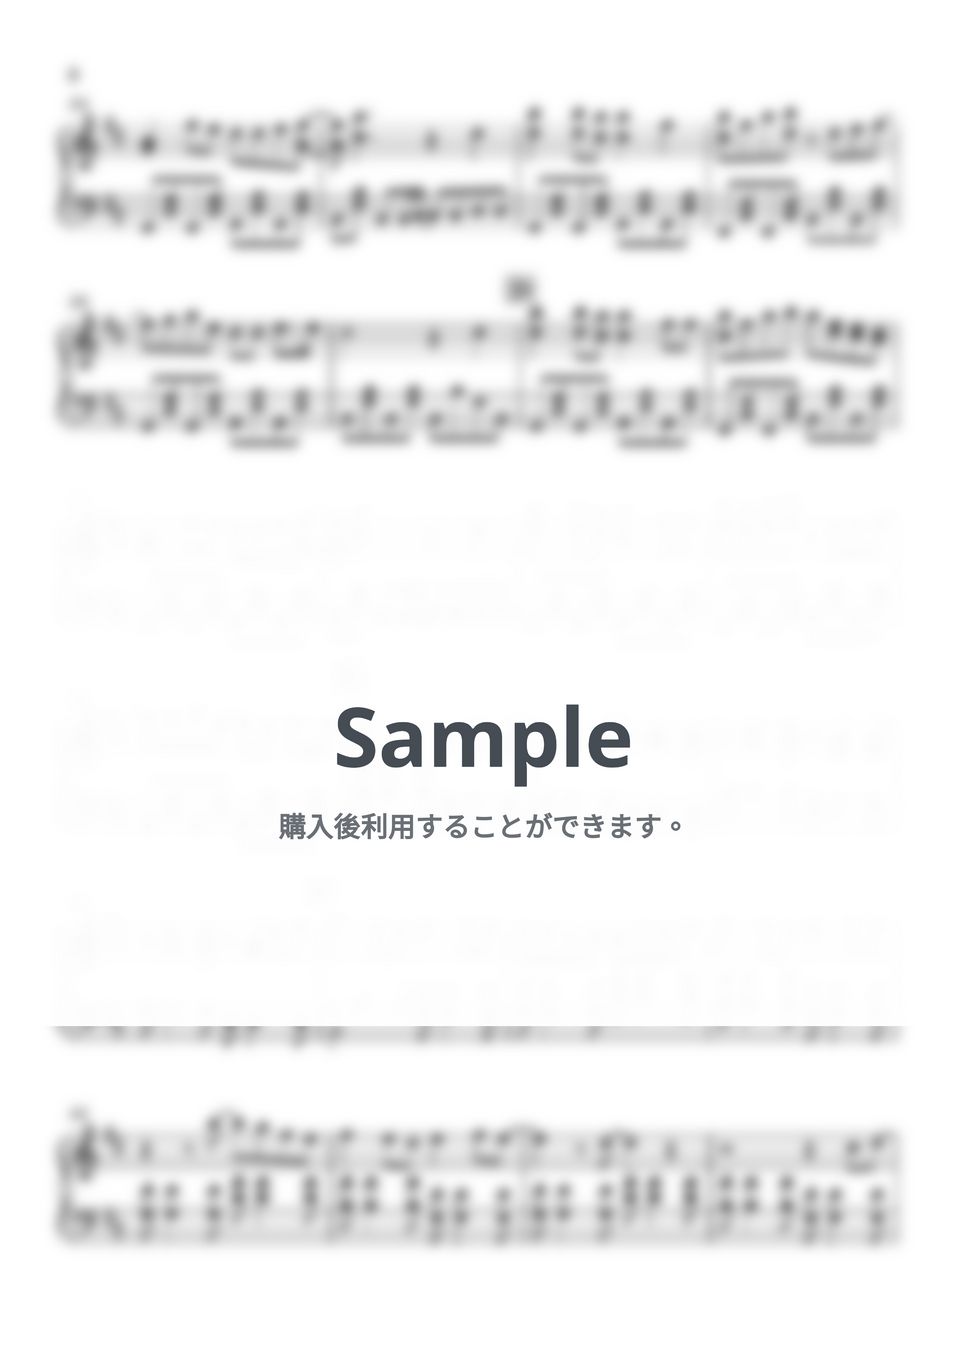 ヨルシカ - 晴る (葬送のフリーレン / ピアノ楽譜 / 中級) by Piano Lovers. jp